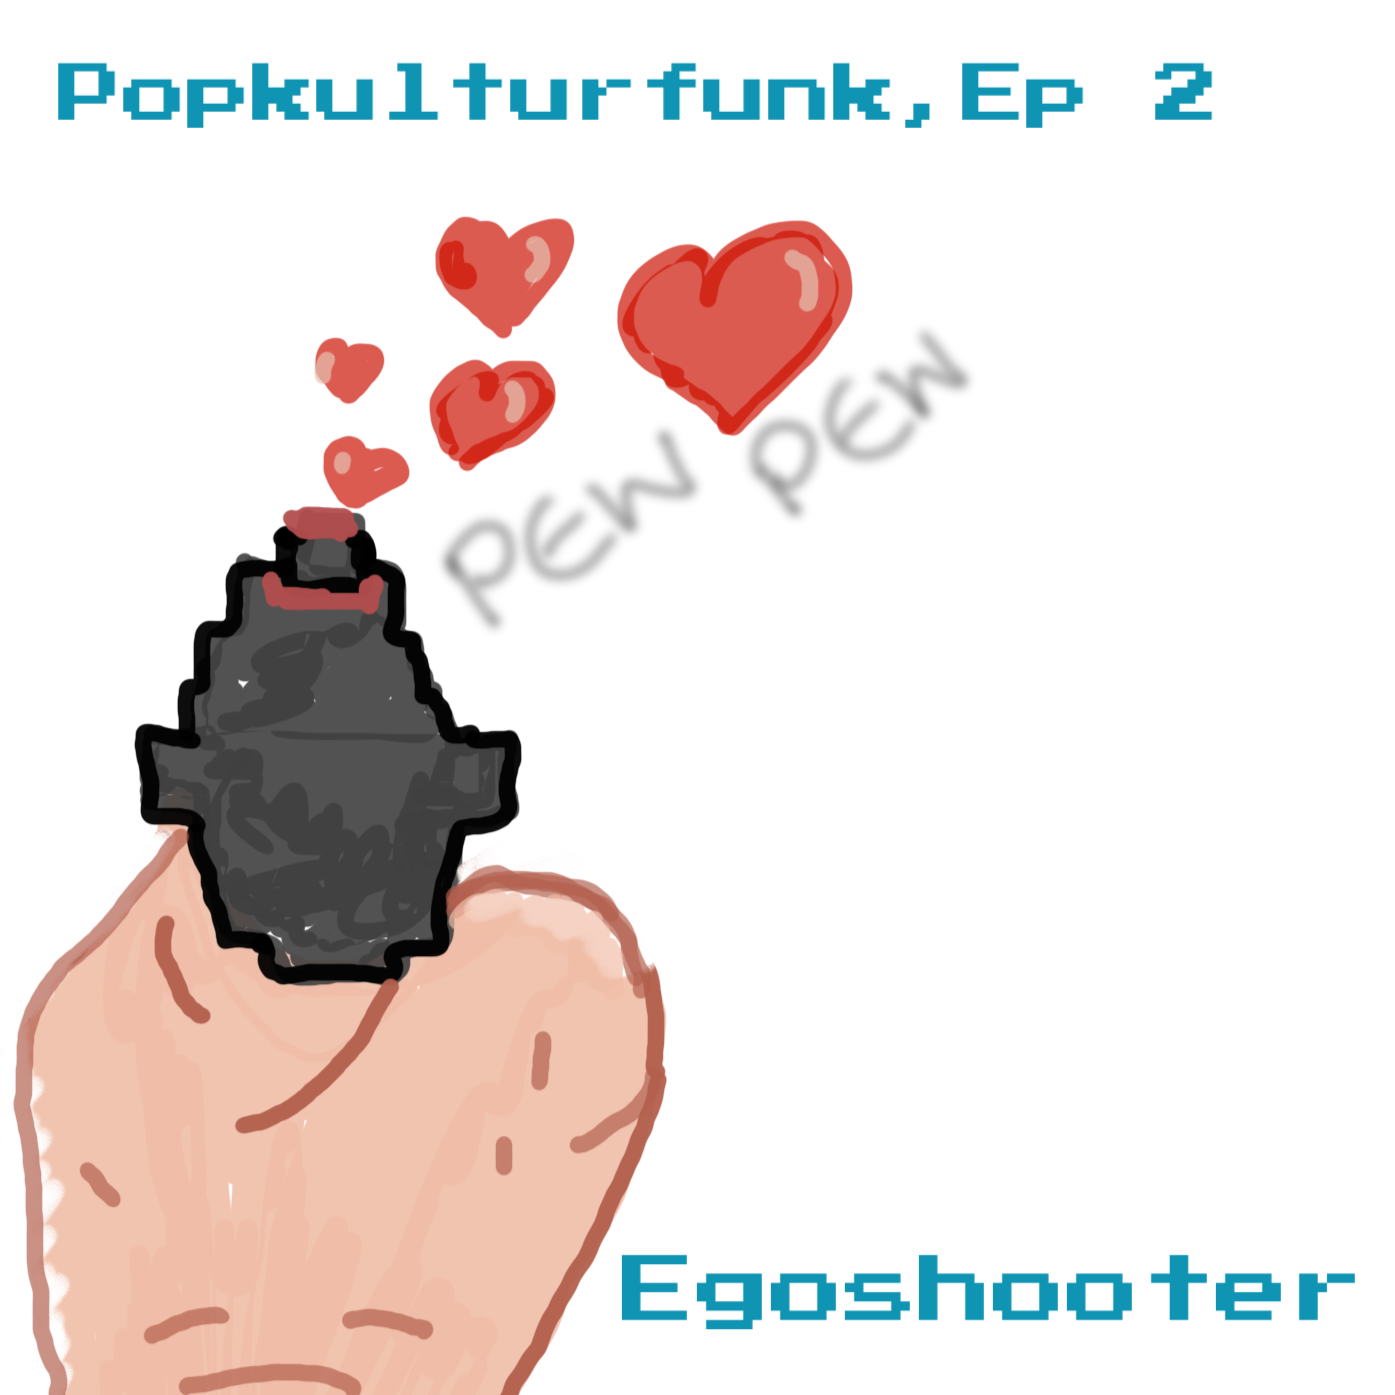 Episode 2: Egoshooter